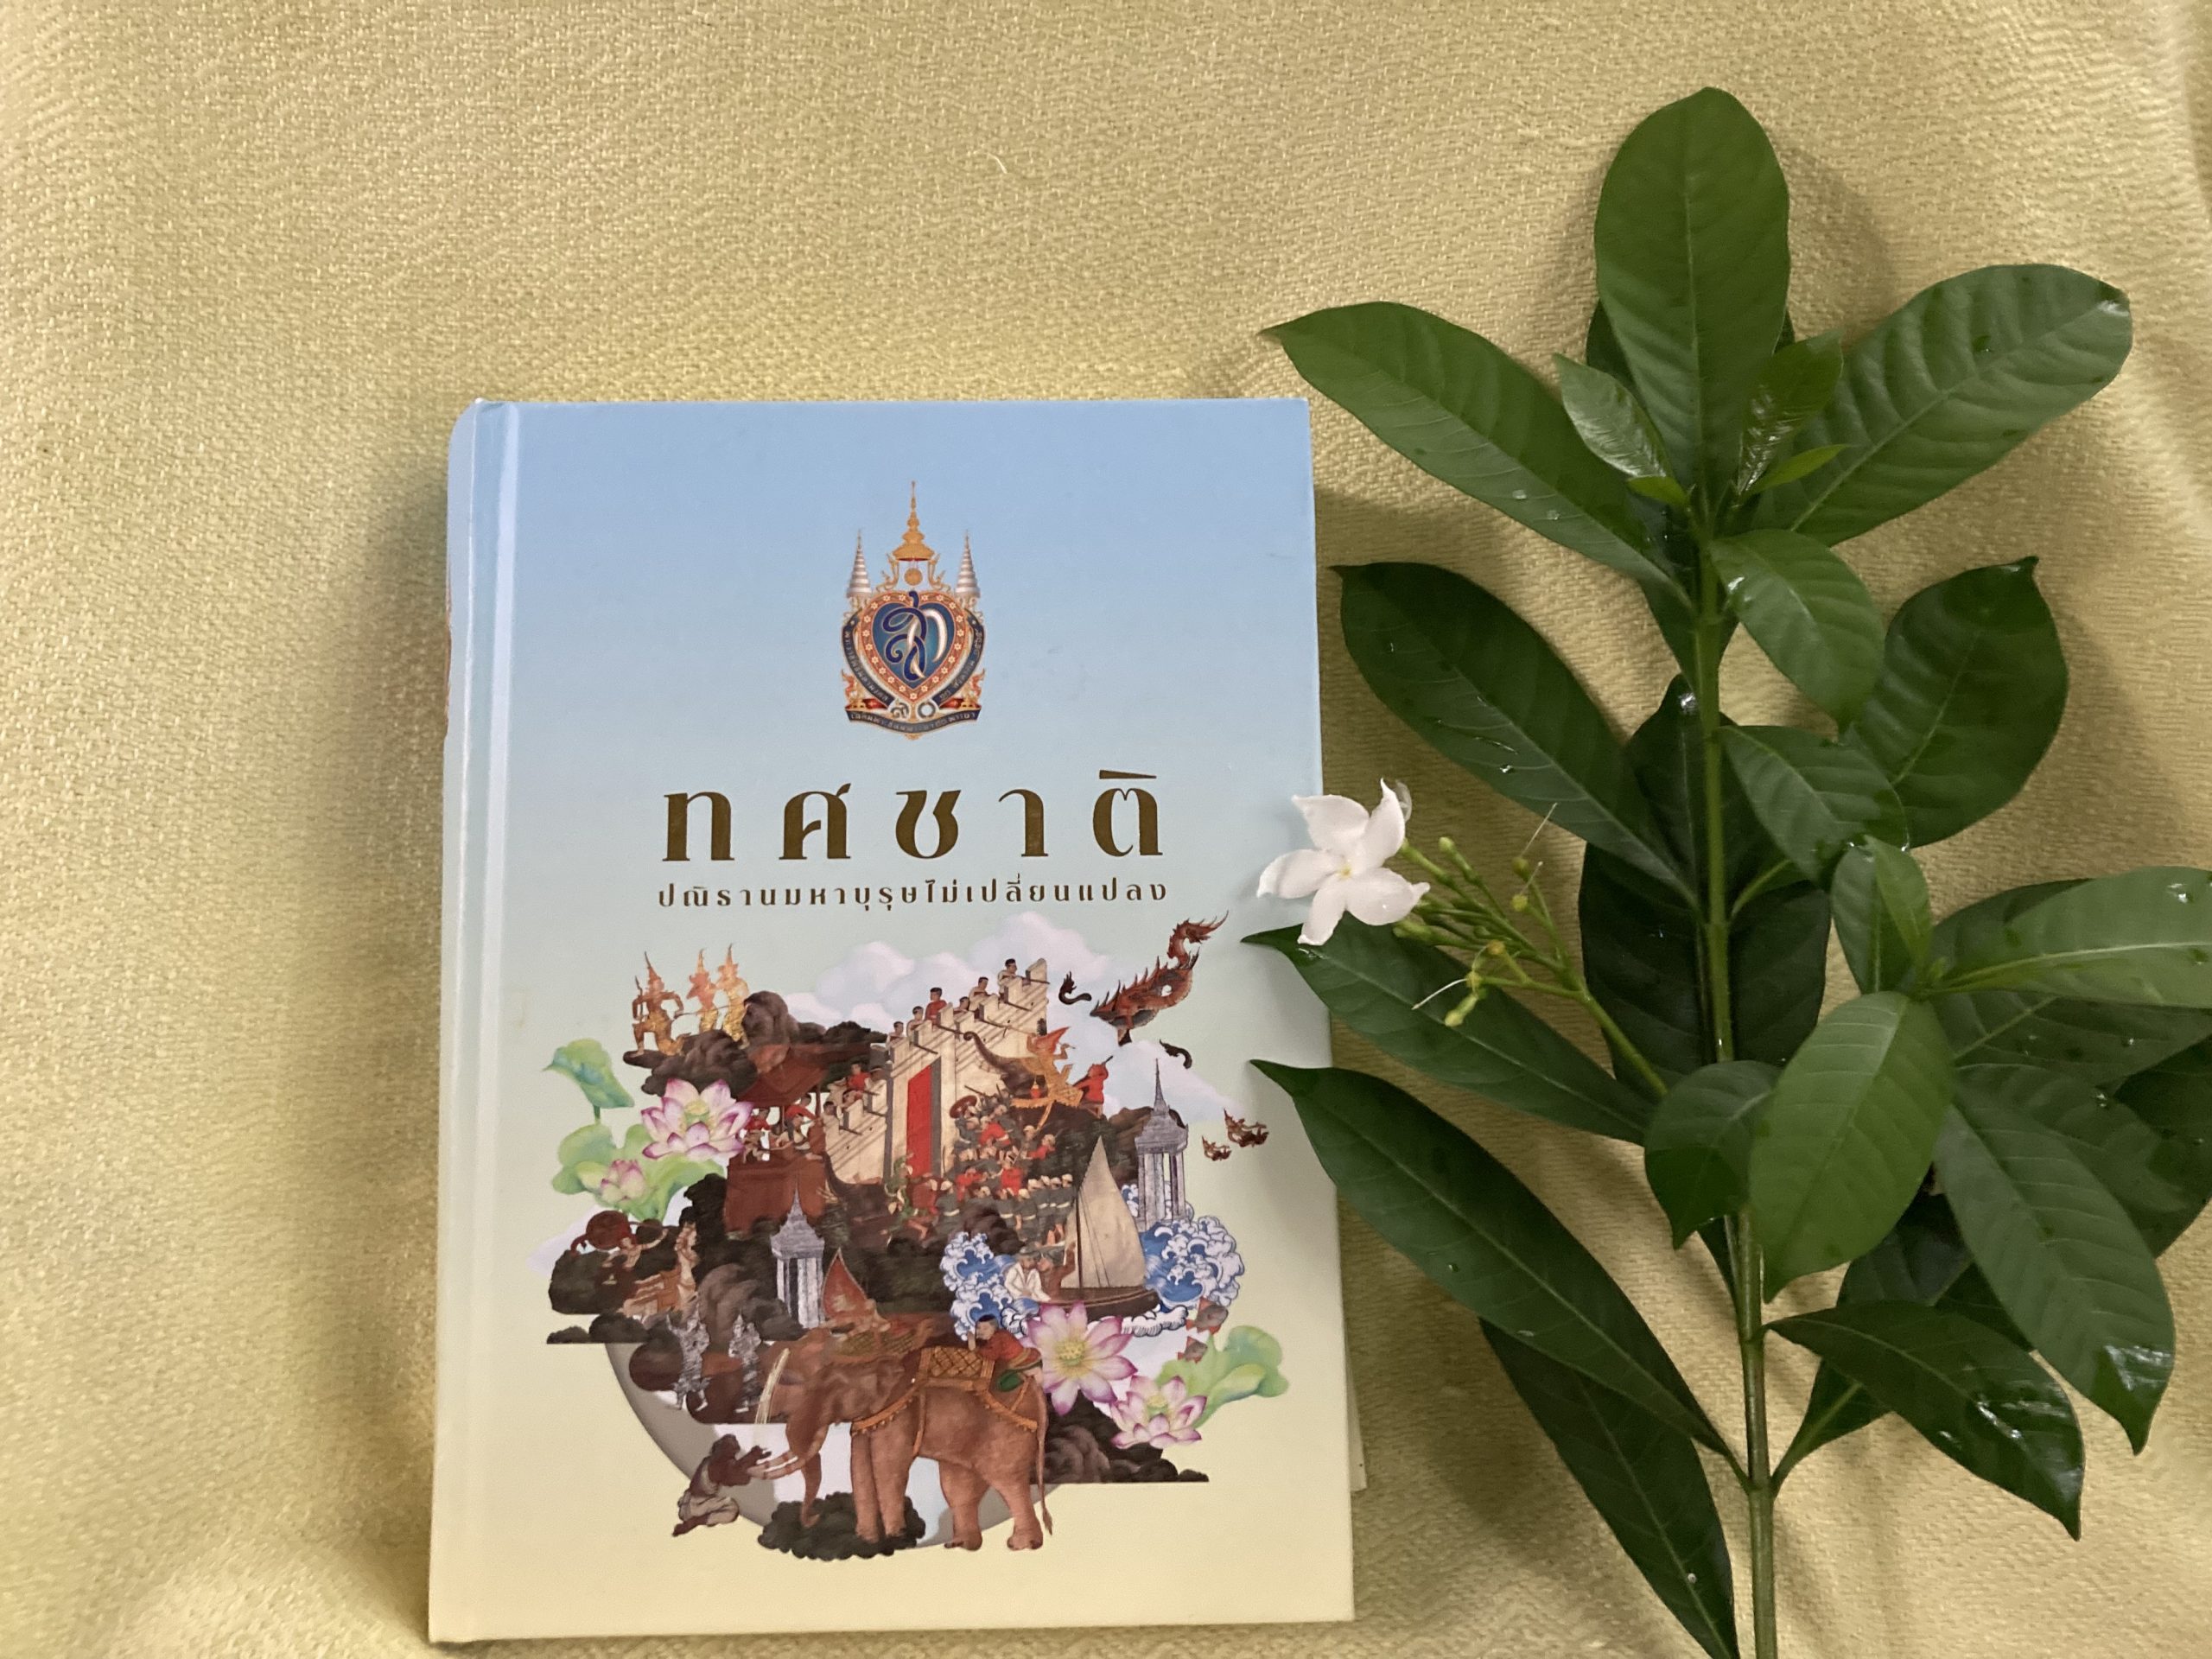 หนังสือ "ทศชาติ ปณิธานมหาบุรุษไม่เปลี่ยนแปลง" ฉบับ ญาณวชิระ : ภาพถ่ายโดย มนสิกุล